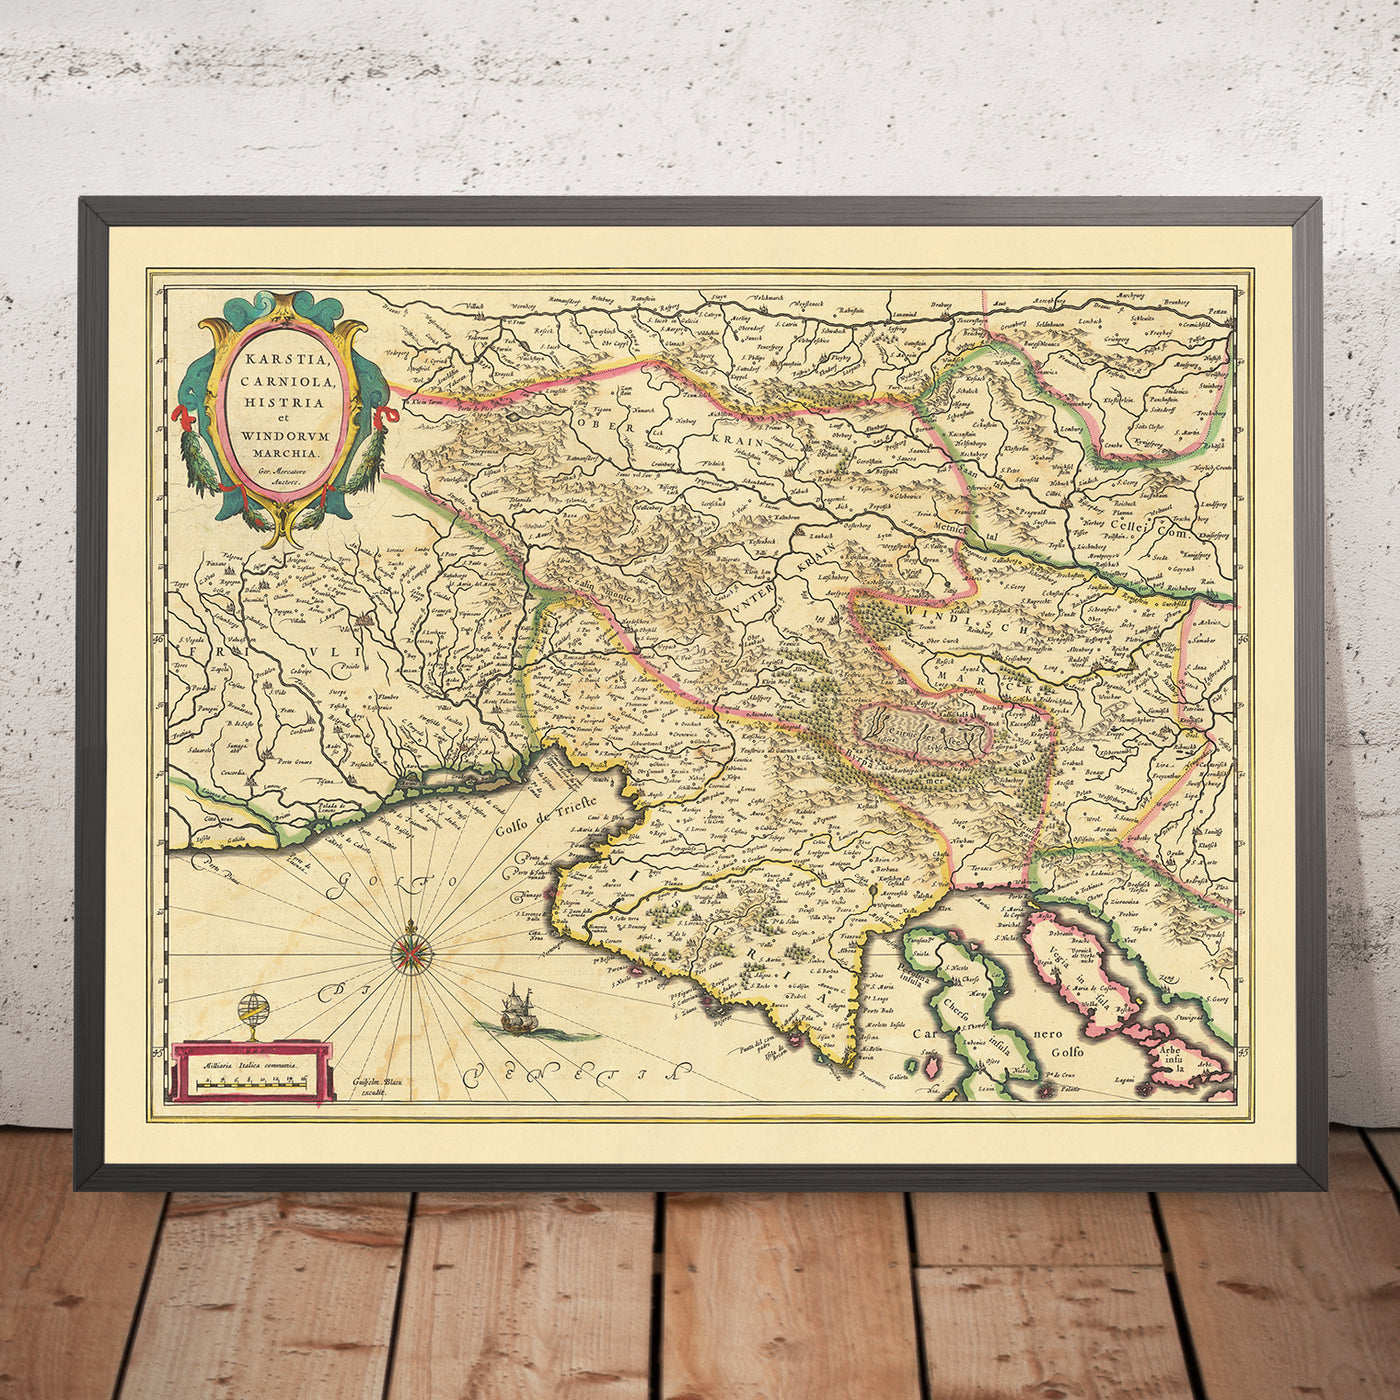 Antiguo mapa detallado de Eslovenia, Croacia e Italia por Blaeu, 1640: mar Adriático, golfo de Venecia, Liubliana, Trieste, meseta kárstica